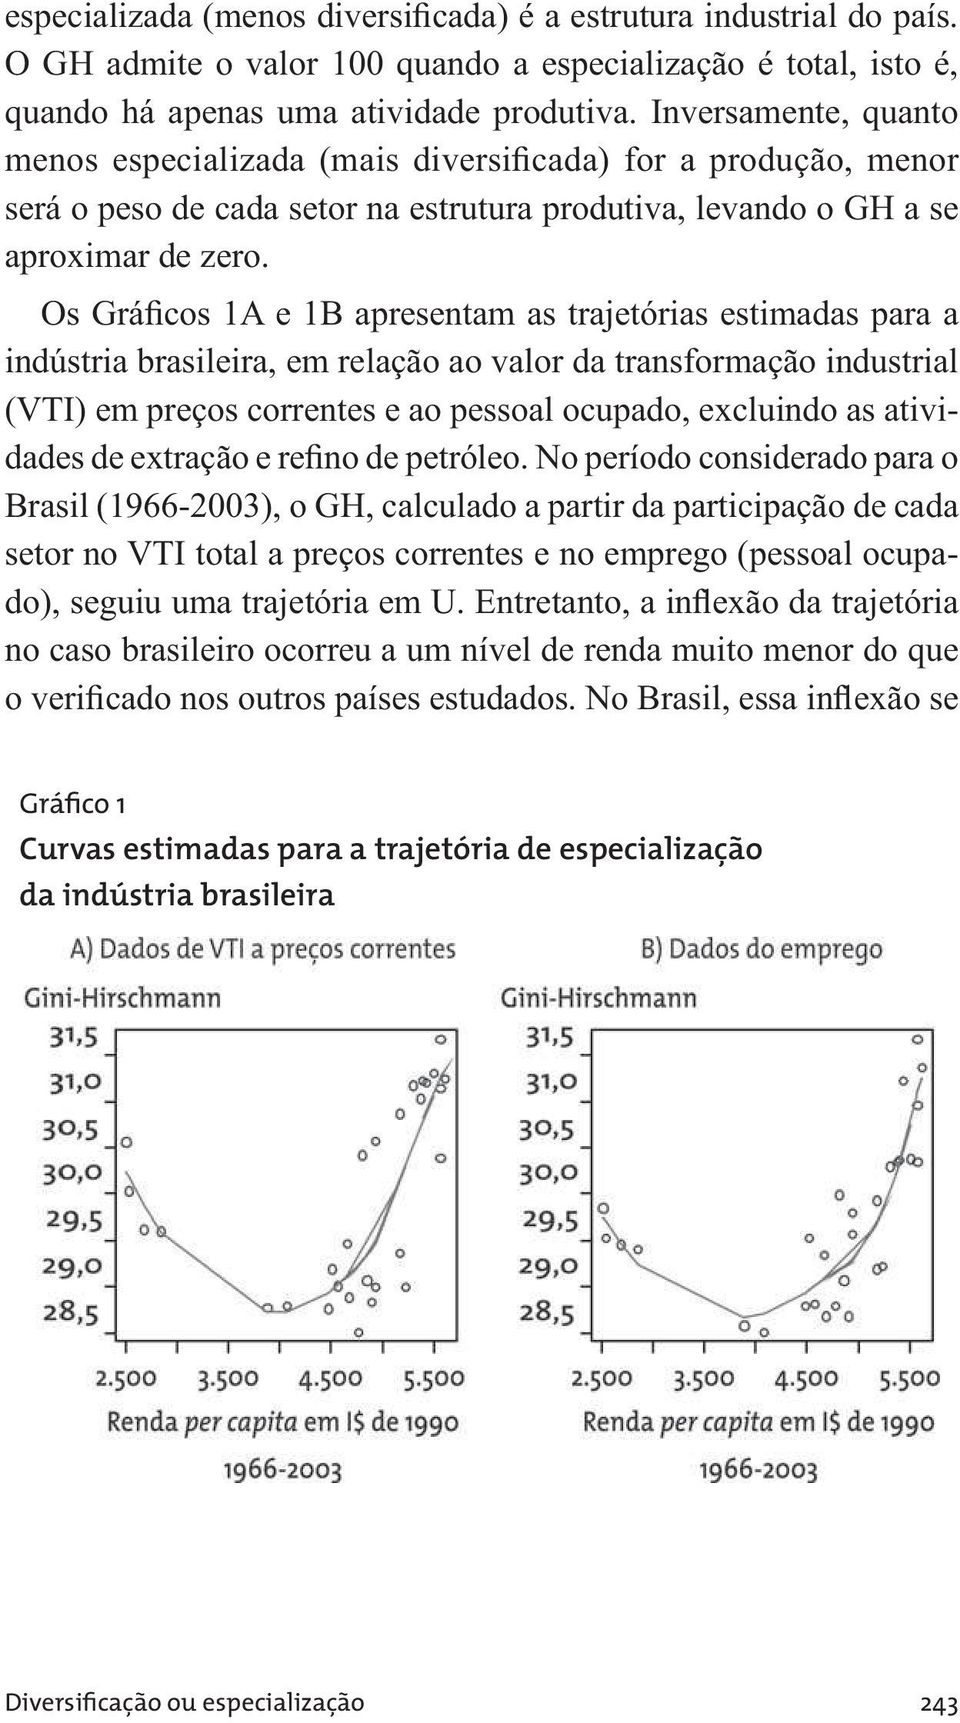 Os Gráficos 1A e 1B apresentam as trajetórias estimadas para a indústria brasileira, em relação ao valor da transformação industrial (VTI) em preços correntes e ao pessoal ocupado, excluindo as